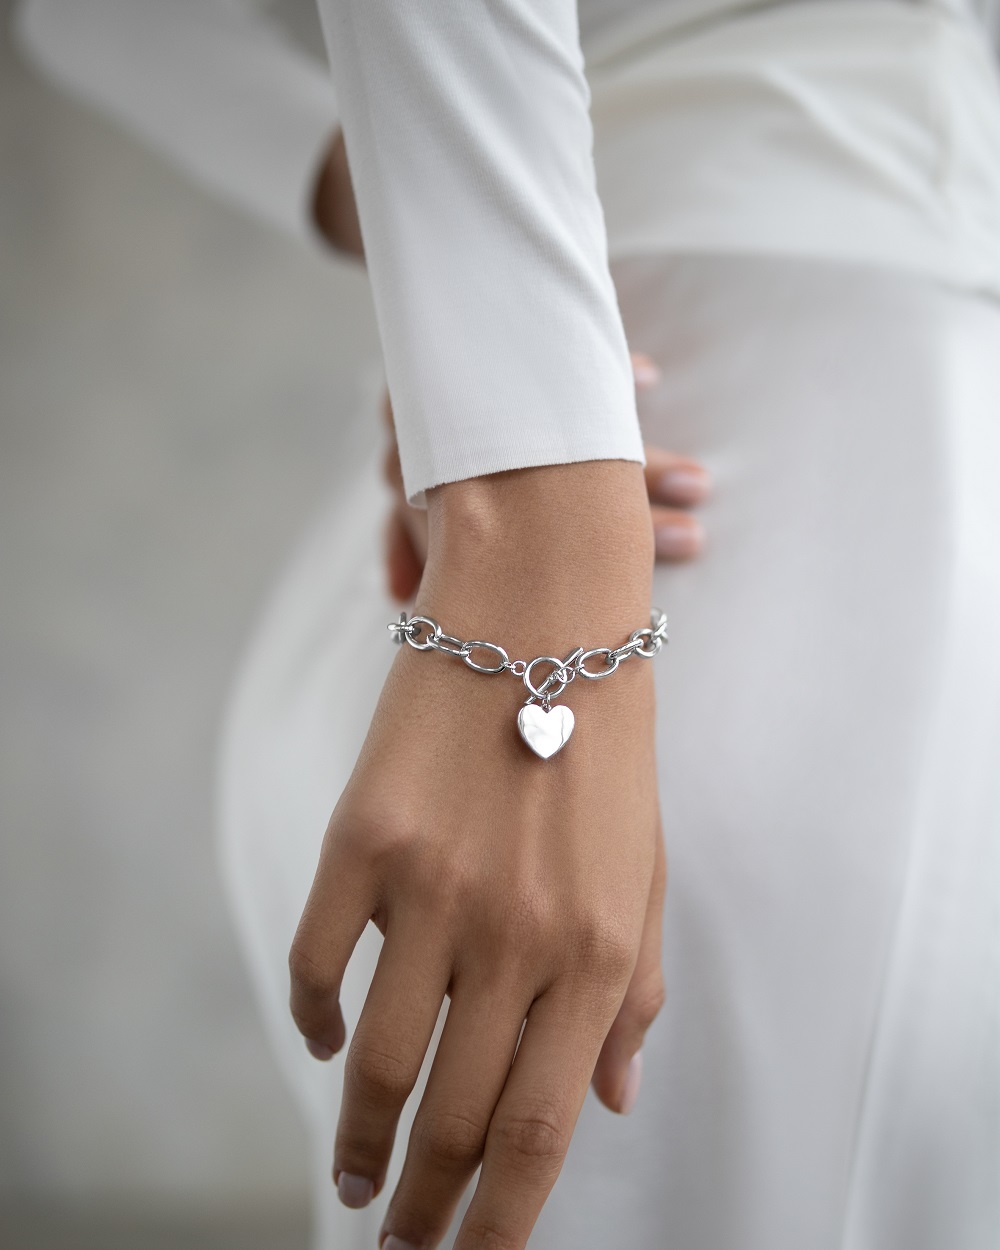 Браслеты: Массивный браслет с сердцем можно купить в ювелирном гардеробе MOMNT (Momentsilver), интернет-магазине украшений из серебра. Серебро 925, родий. Артикул 